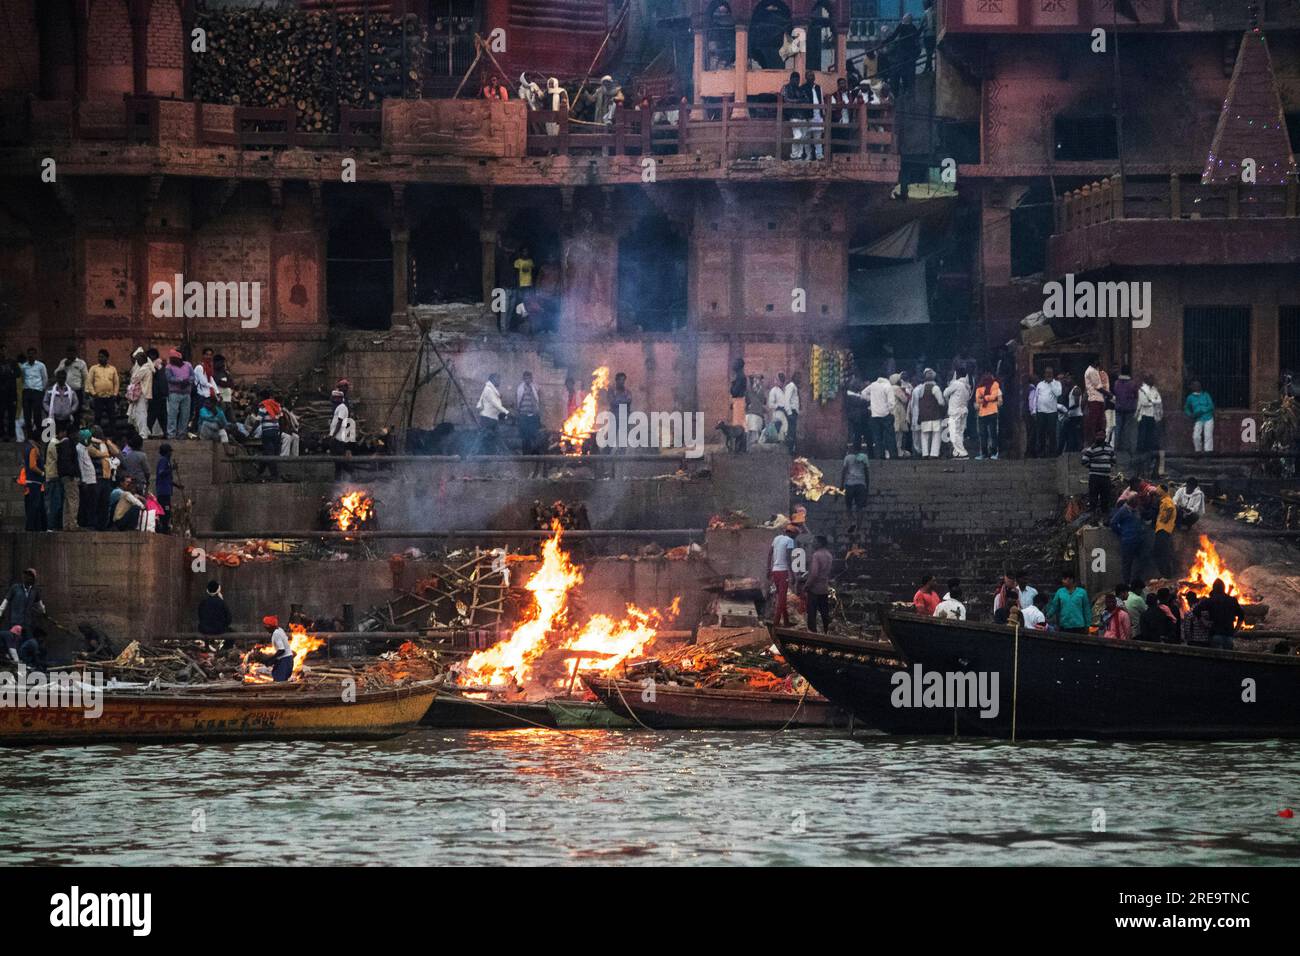 Les gens préparent des bûchers funéraires à Varanasi sur les rives du Gange, qui est l'une des plus anciennes villes continuellement habitées dans le monde, et la plus sainte des sept villes sacrées de l'hindouisme. Chaque jour, à Manikarnika Ghat, le ghat de crémation le plus grand et le plus propice, environ 100 corps sont incinérés sur des bûchers en bois le long du bord de la rivière. On dit que la flamme éternelle qui alimente les feux brûle depuis des siècles maintenant. Varanasi, Inde. Banque D'Images